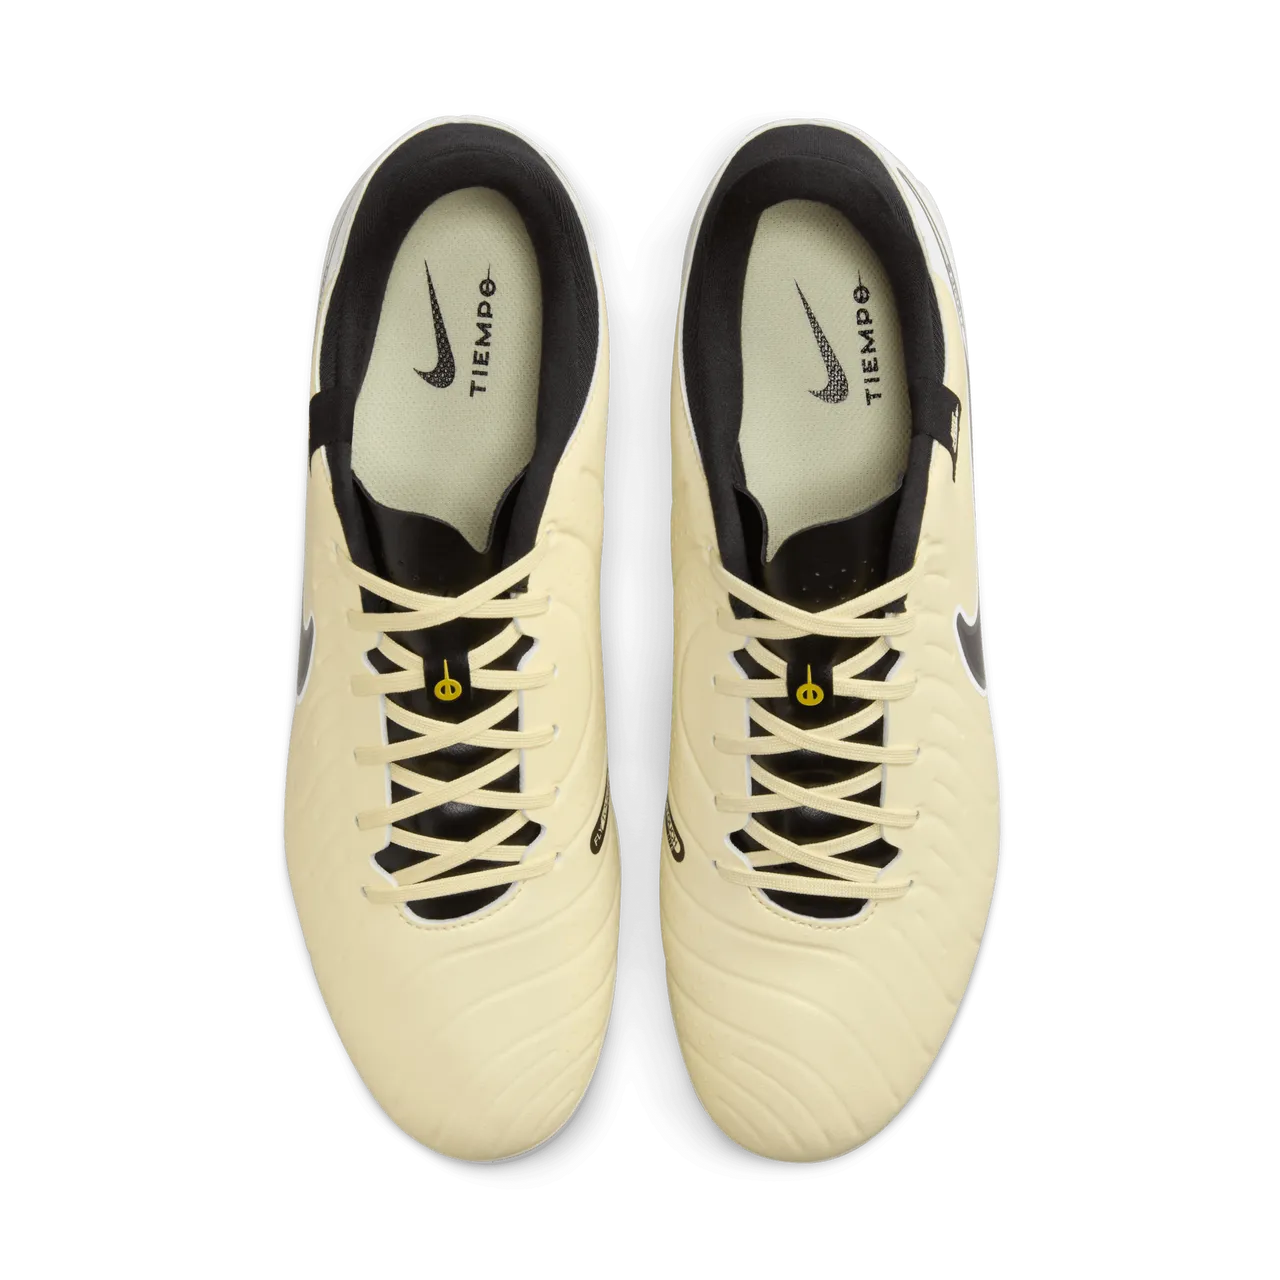 Nike Tiempo Legend 10 Academy low-top voetbalschoenen (meerdere ondergronden) - Geel